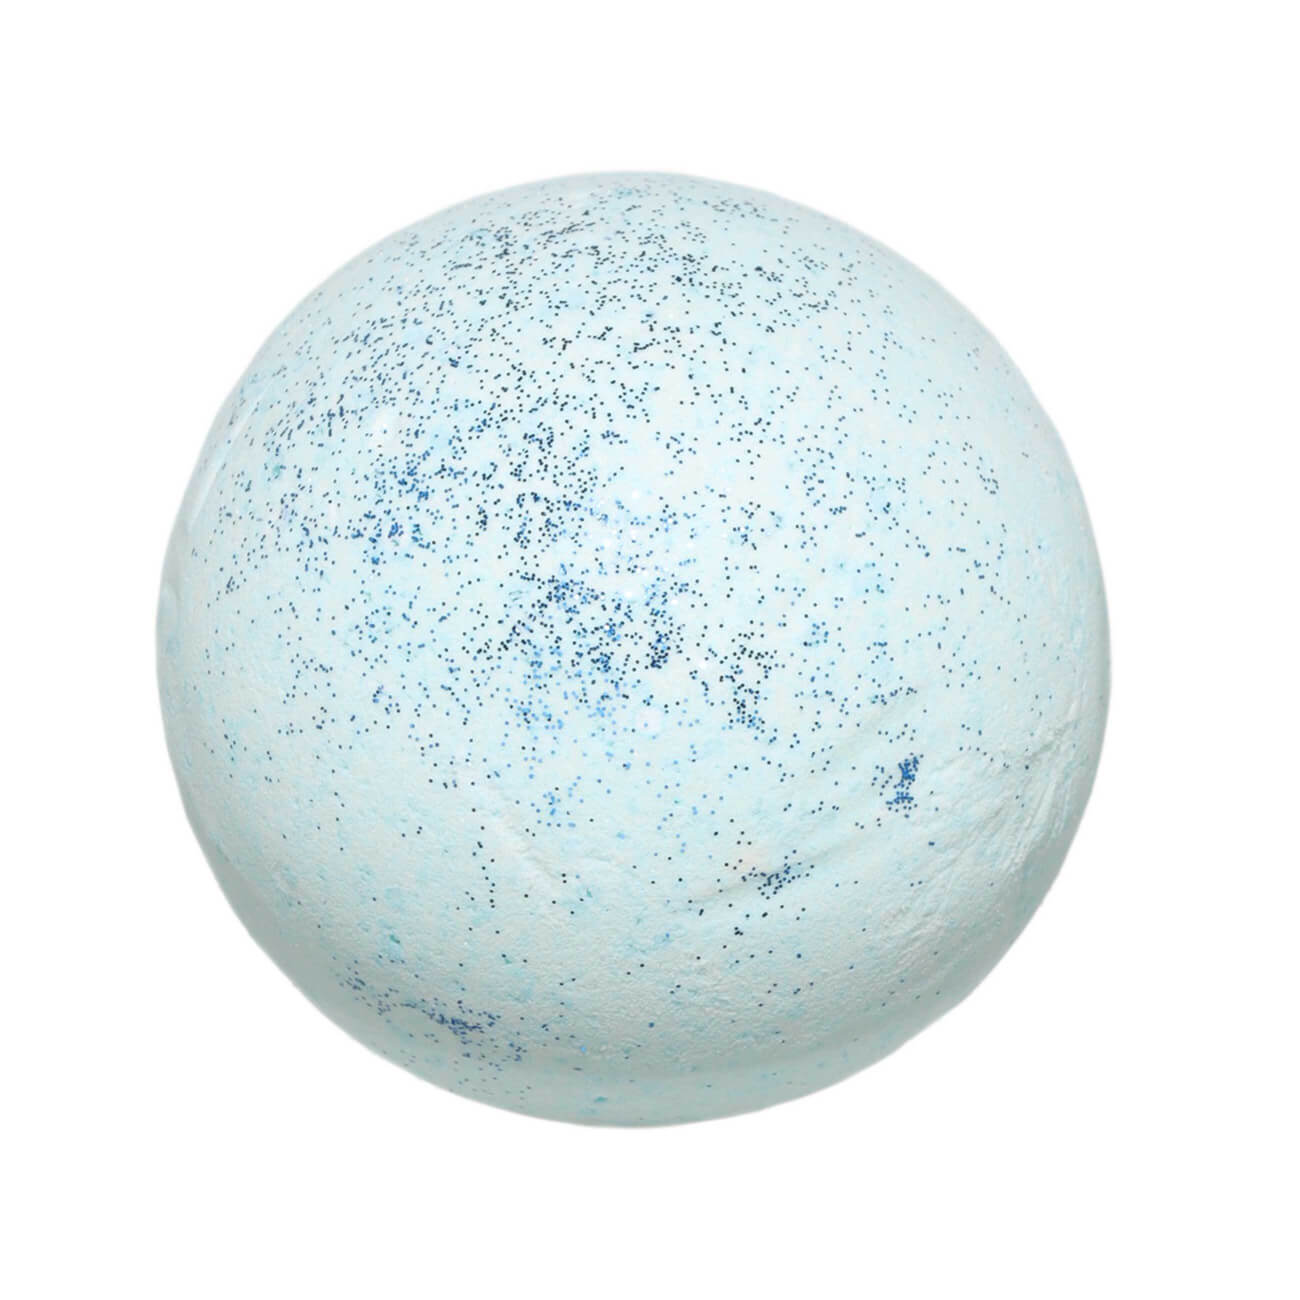 Бомбочка для ванны, 130 гр, с блестками, Ягодный аромат, голубая, Шар, Sparkle body изображение № 1